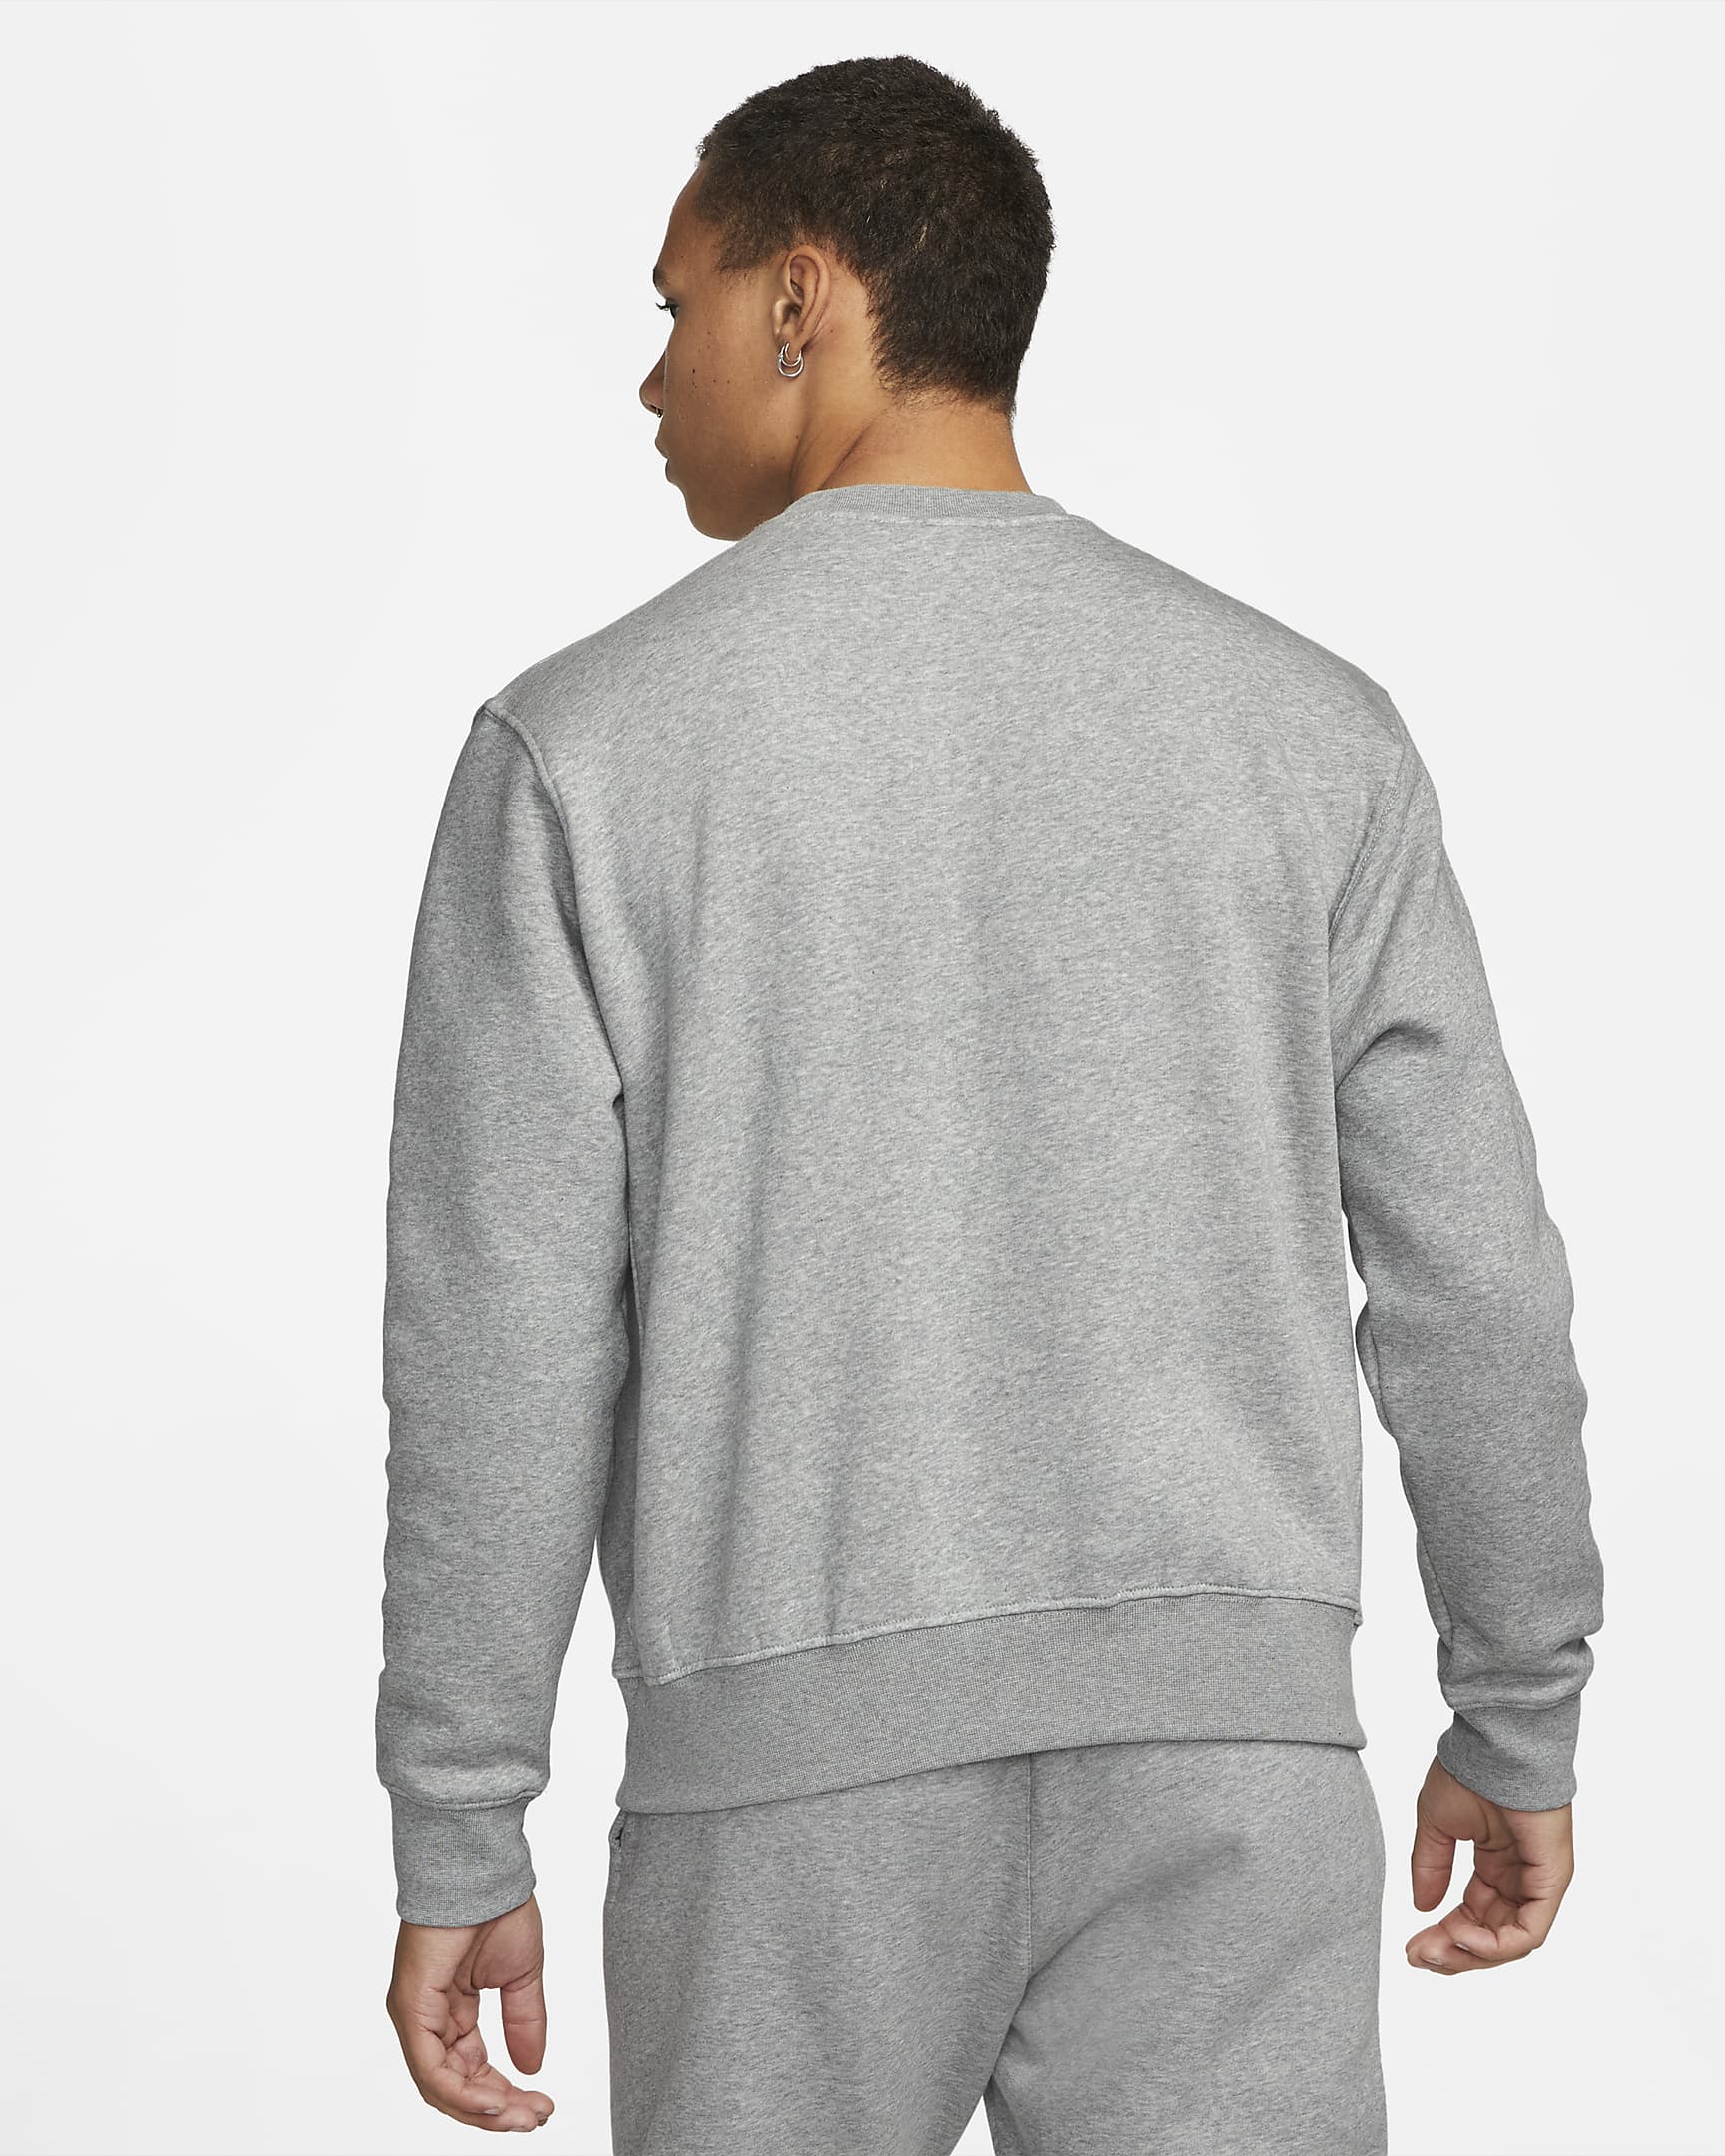 Nike Sportswear Men's Fleece Sweatshirt. Nike PT